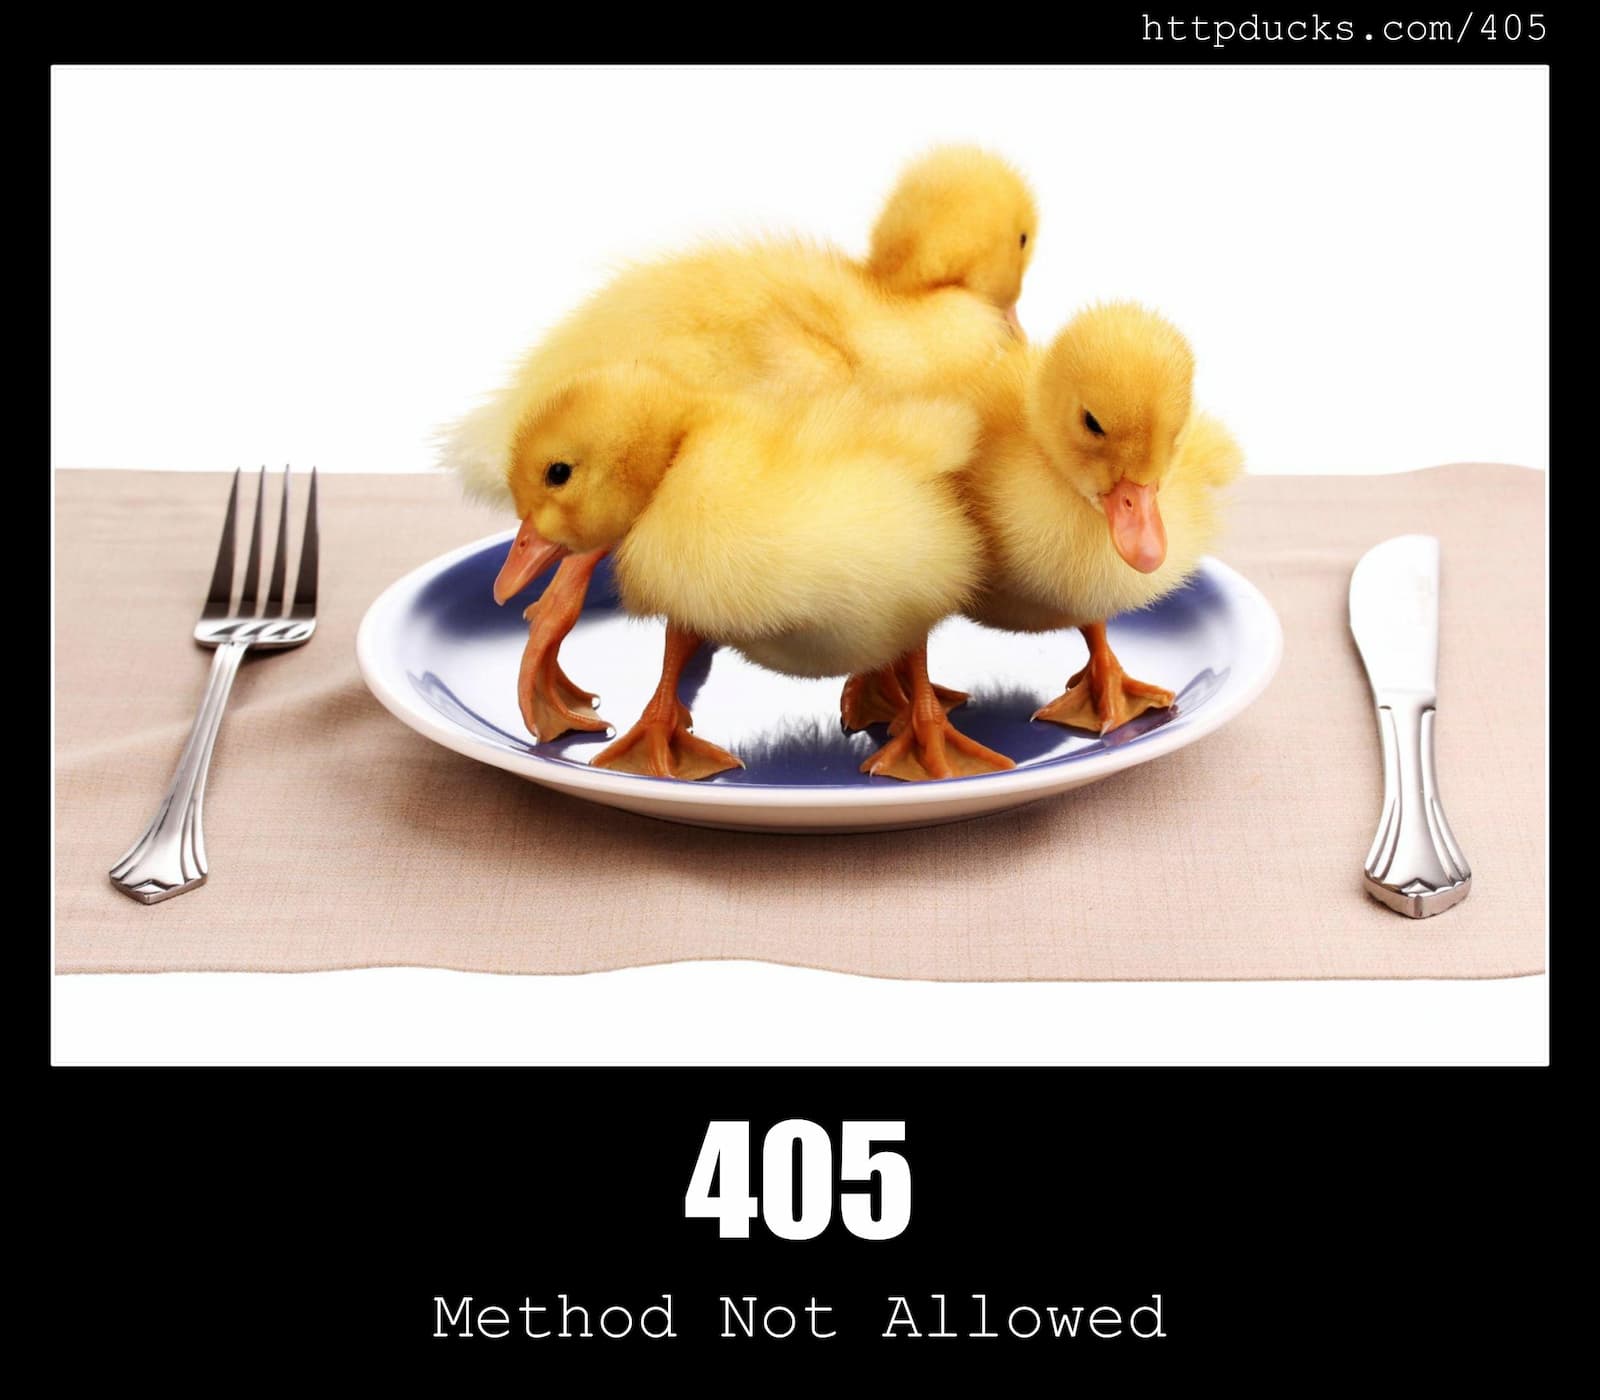 HTTP Status Code 405 Method Not Allowed & Ducks